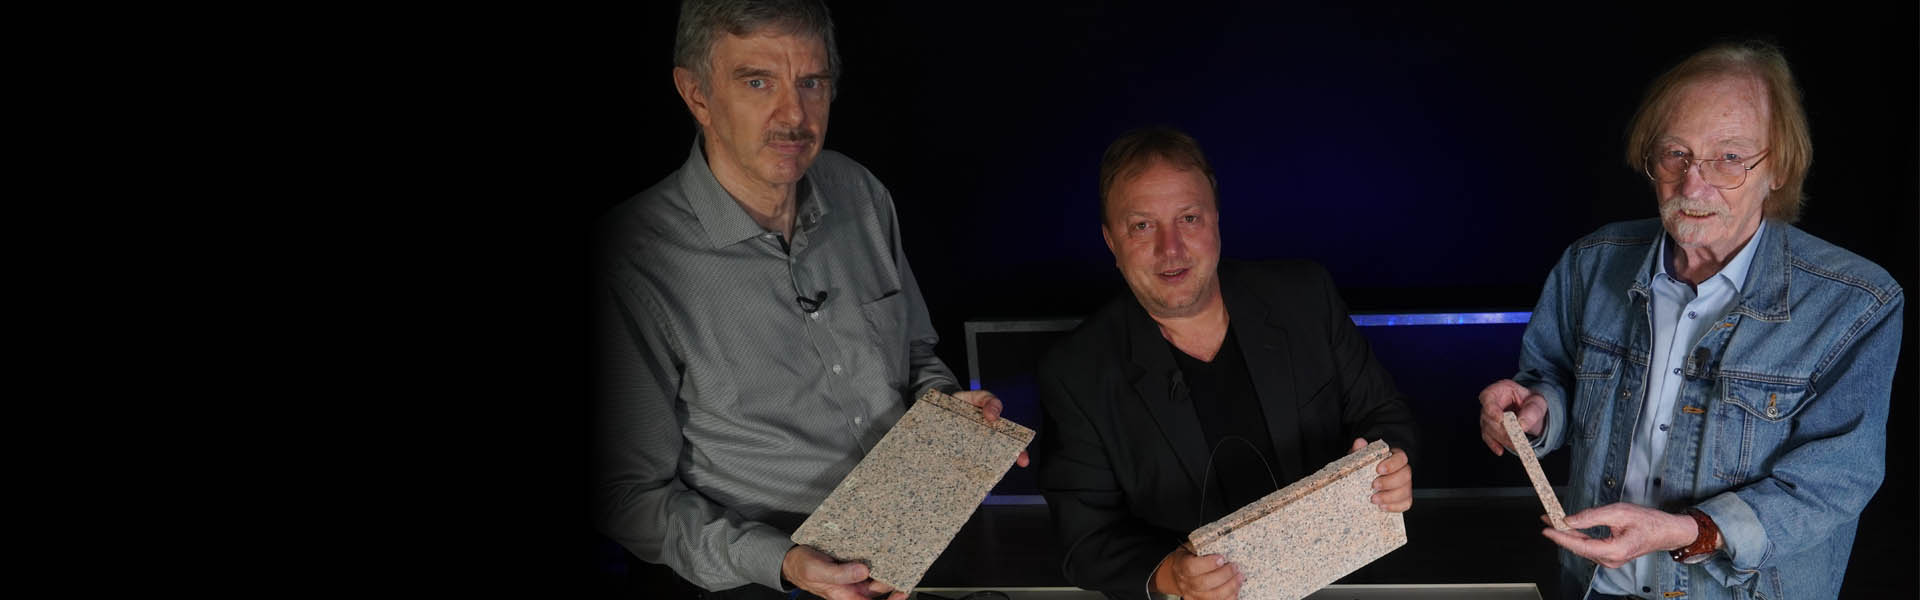 Steinbearbeitung im alten Ägypten - Dr. Hans Jelitto, Gernot Geise, Dr. Dominique Görlitz & Frank Stoner